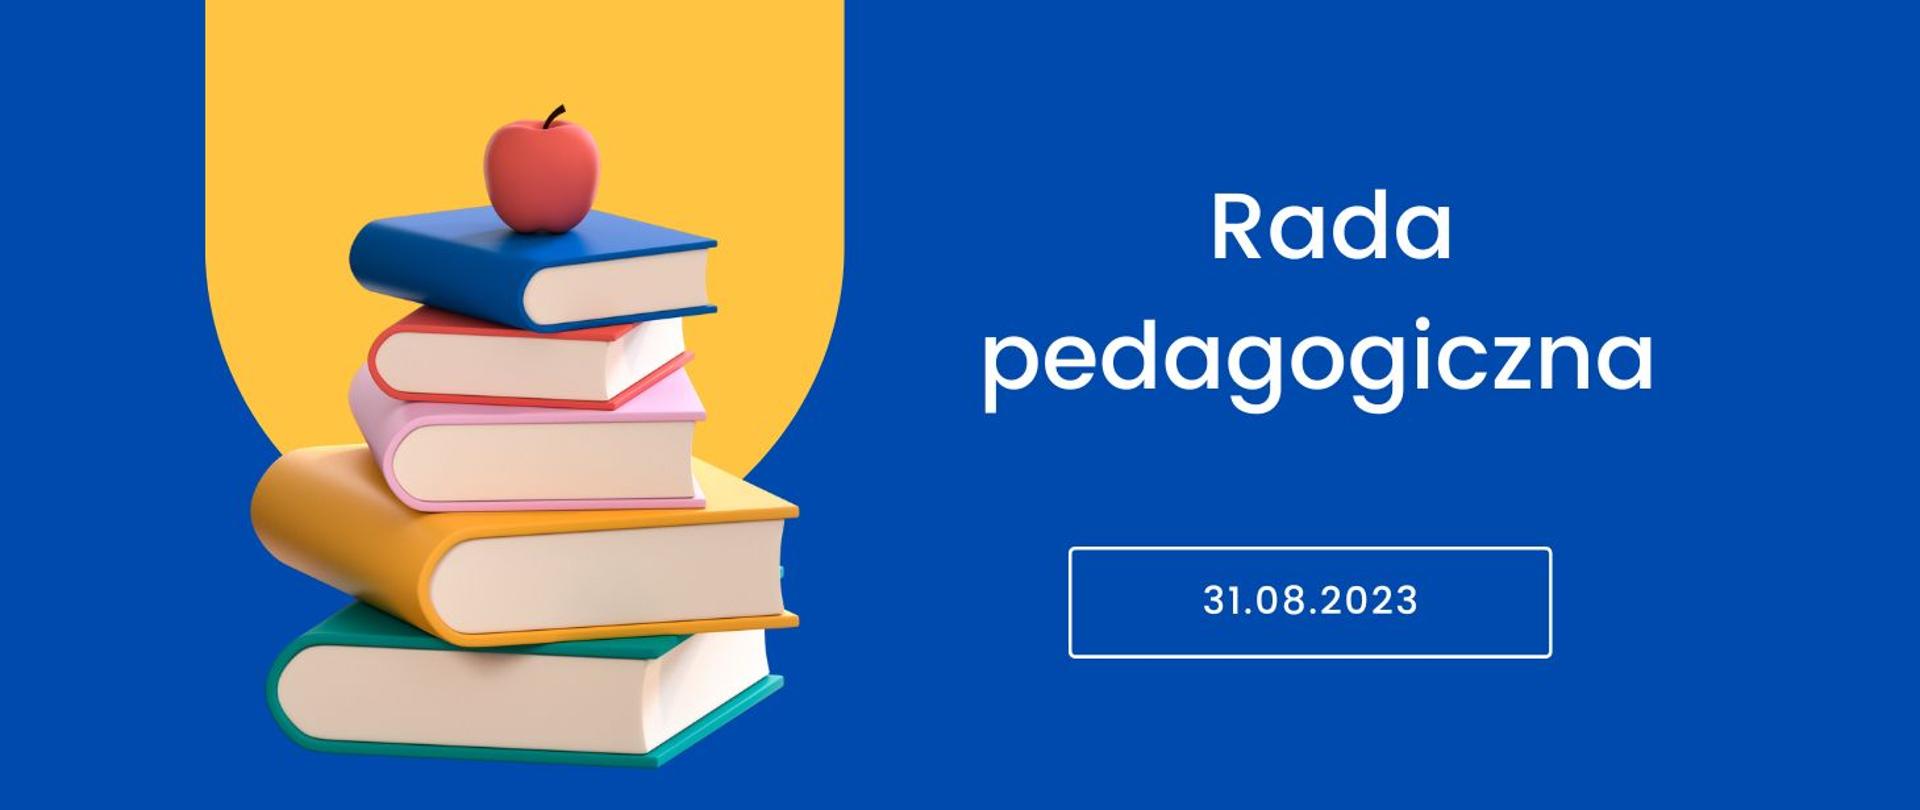 Plakat informujący o radzie pedagogicznej w dniu 31.08.2023r., kobaltowe tło, po lewej stronie sterta książek, na której leży jabłko zwieńczona zółtym autokształtem. 